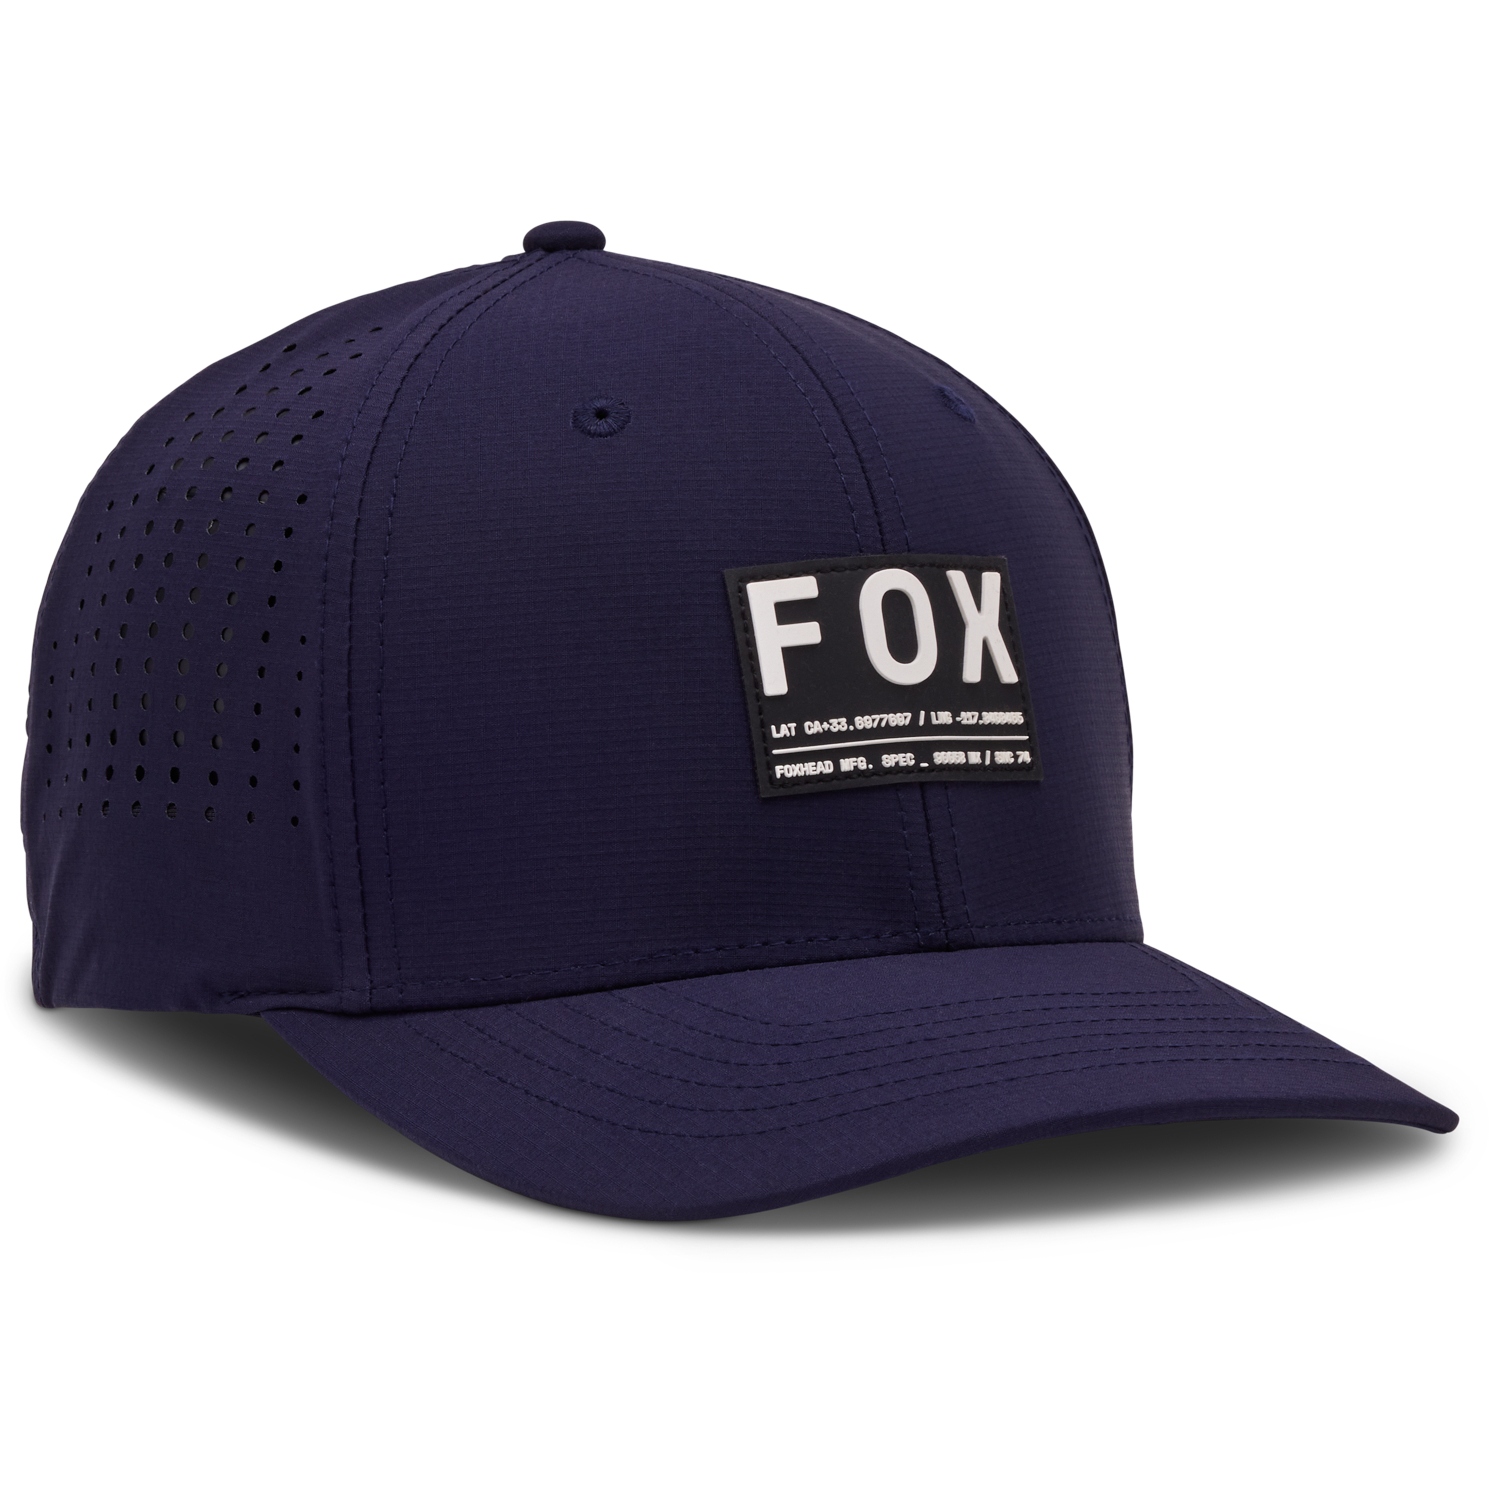 Produktbild von FOX Non Stop Tech Flexfit Kappe - midnight